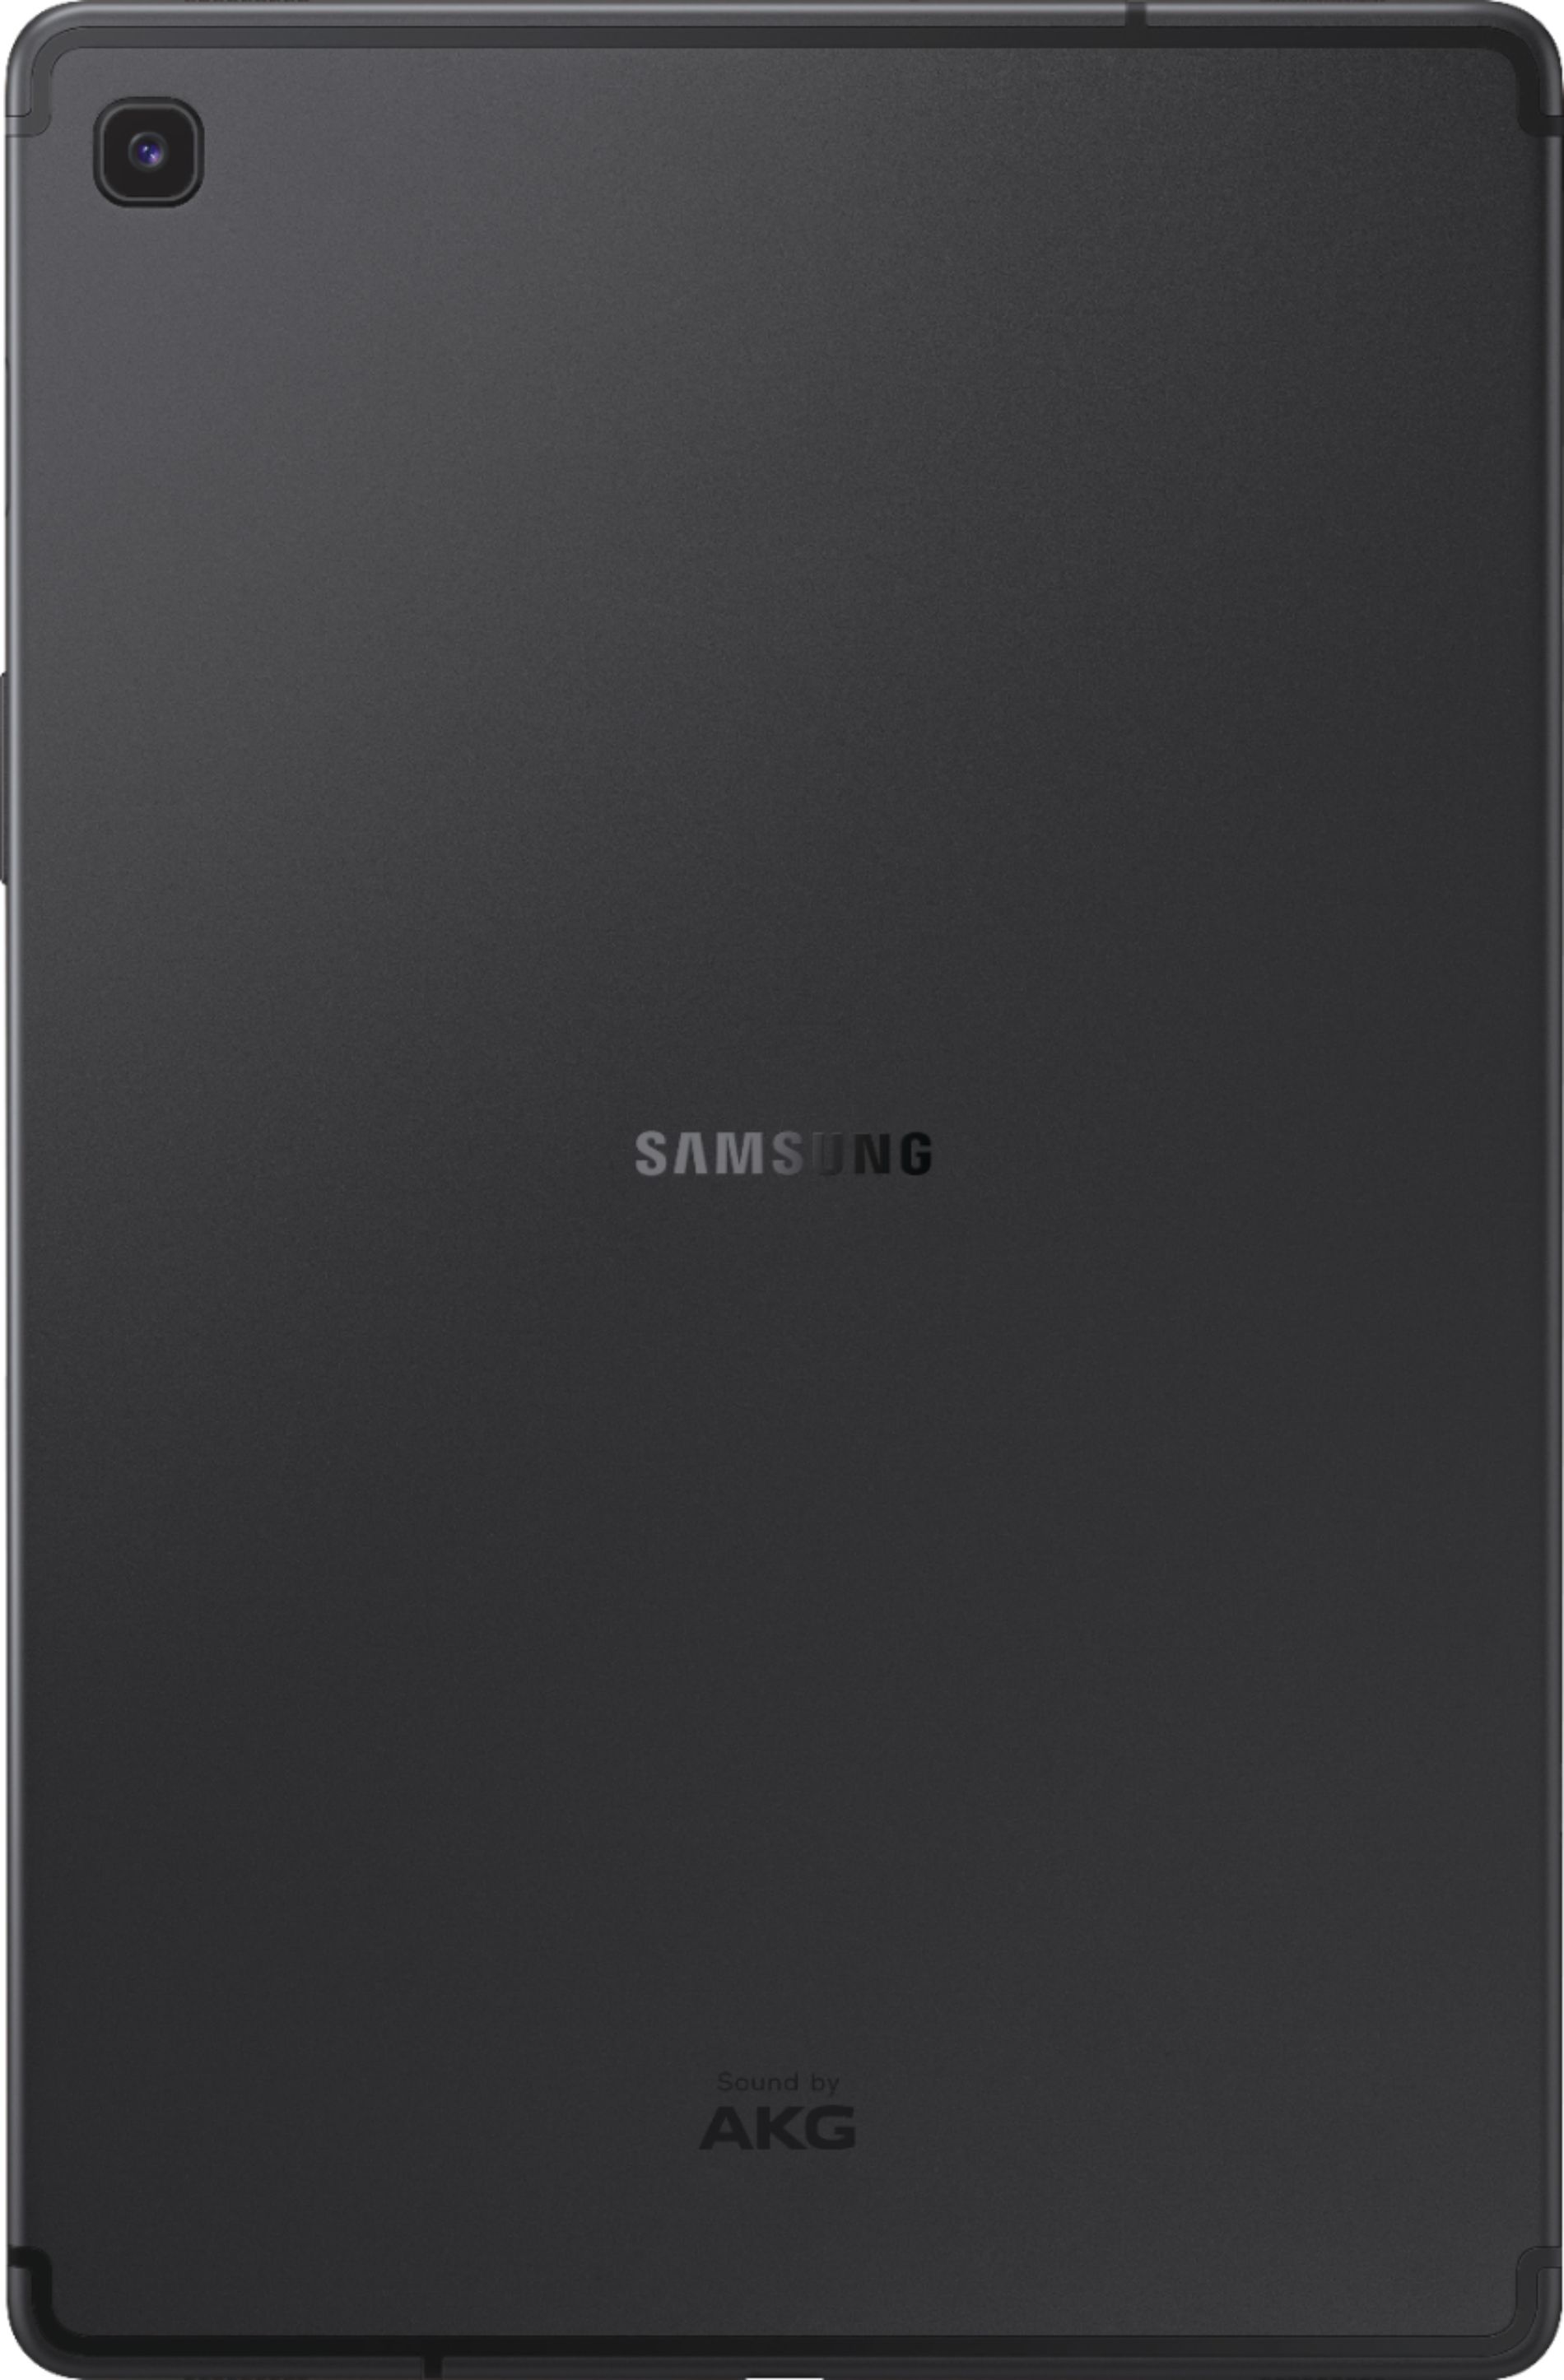 Samsung Galaxy Tab S5e 10 5 64gb Black Sm T720nzkaxar Best Buy